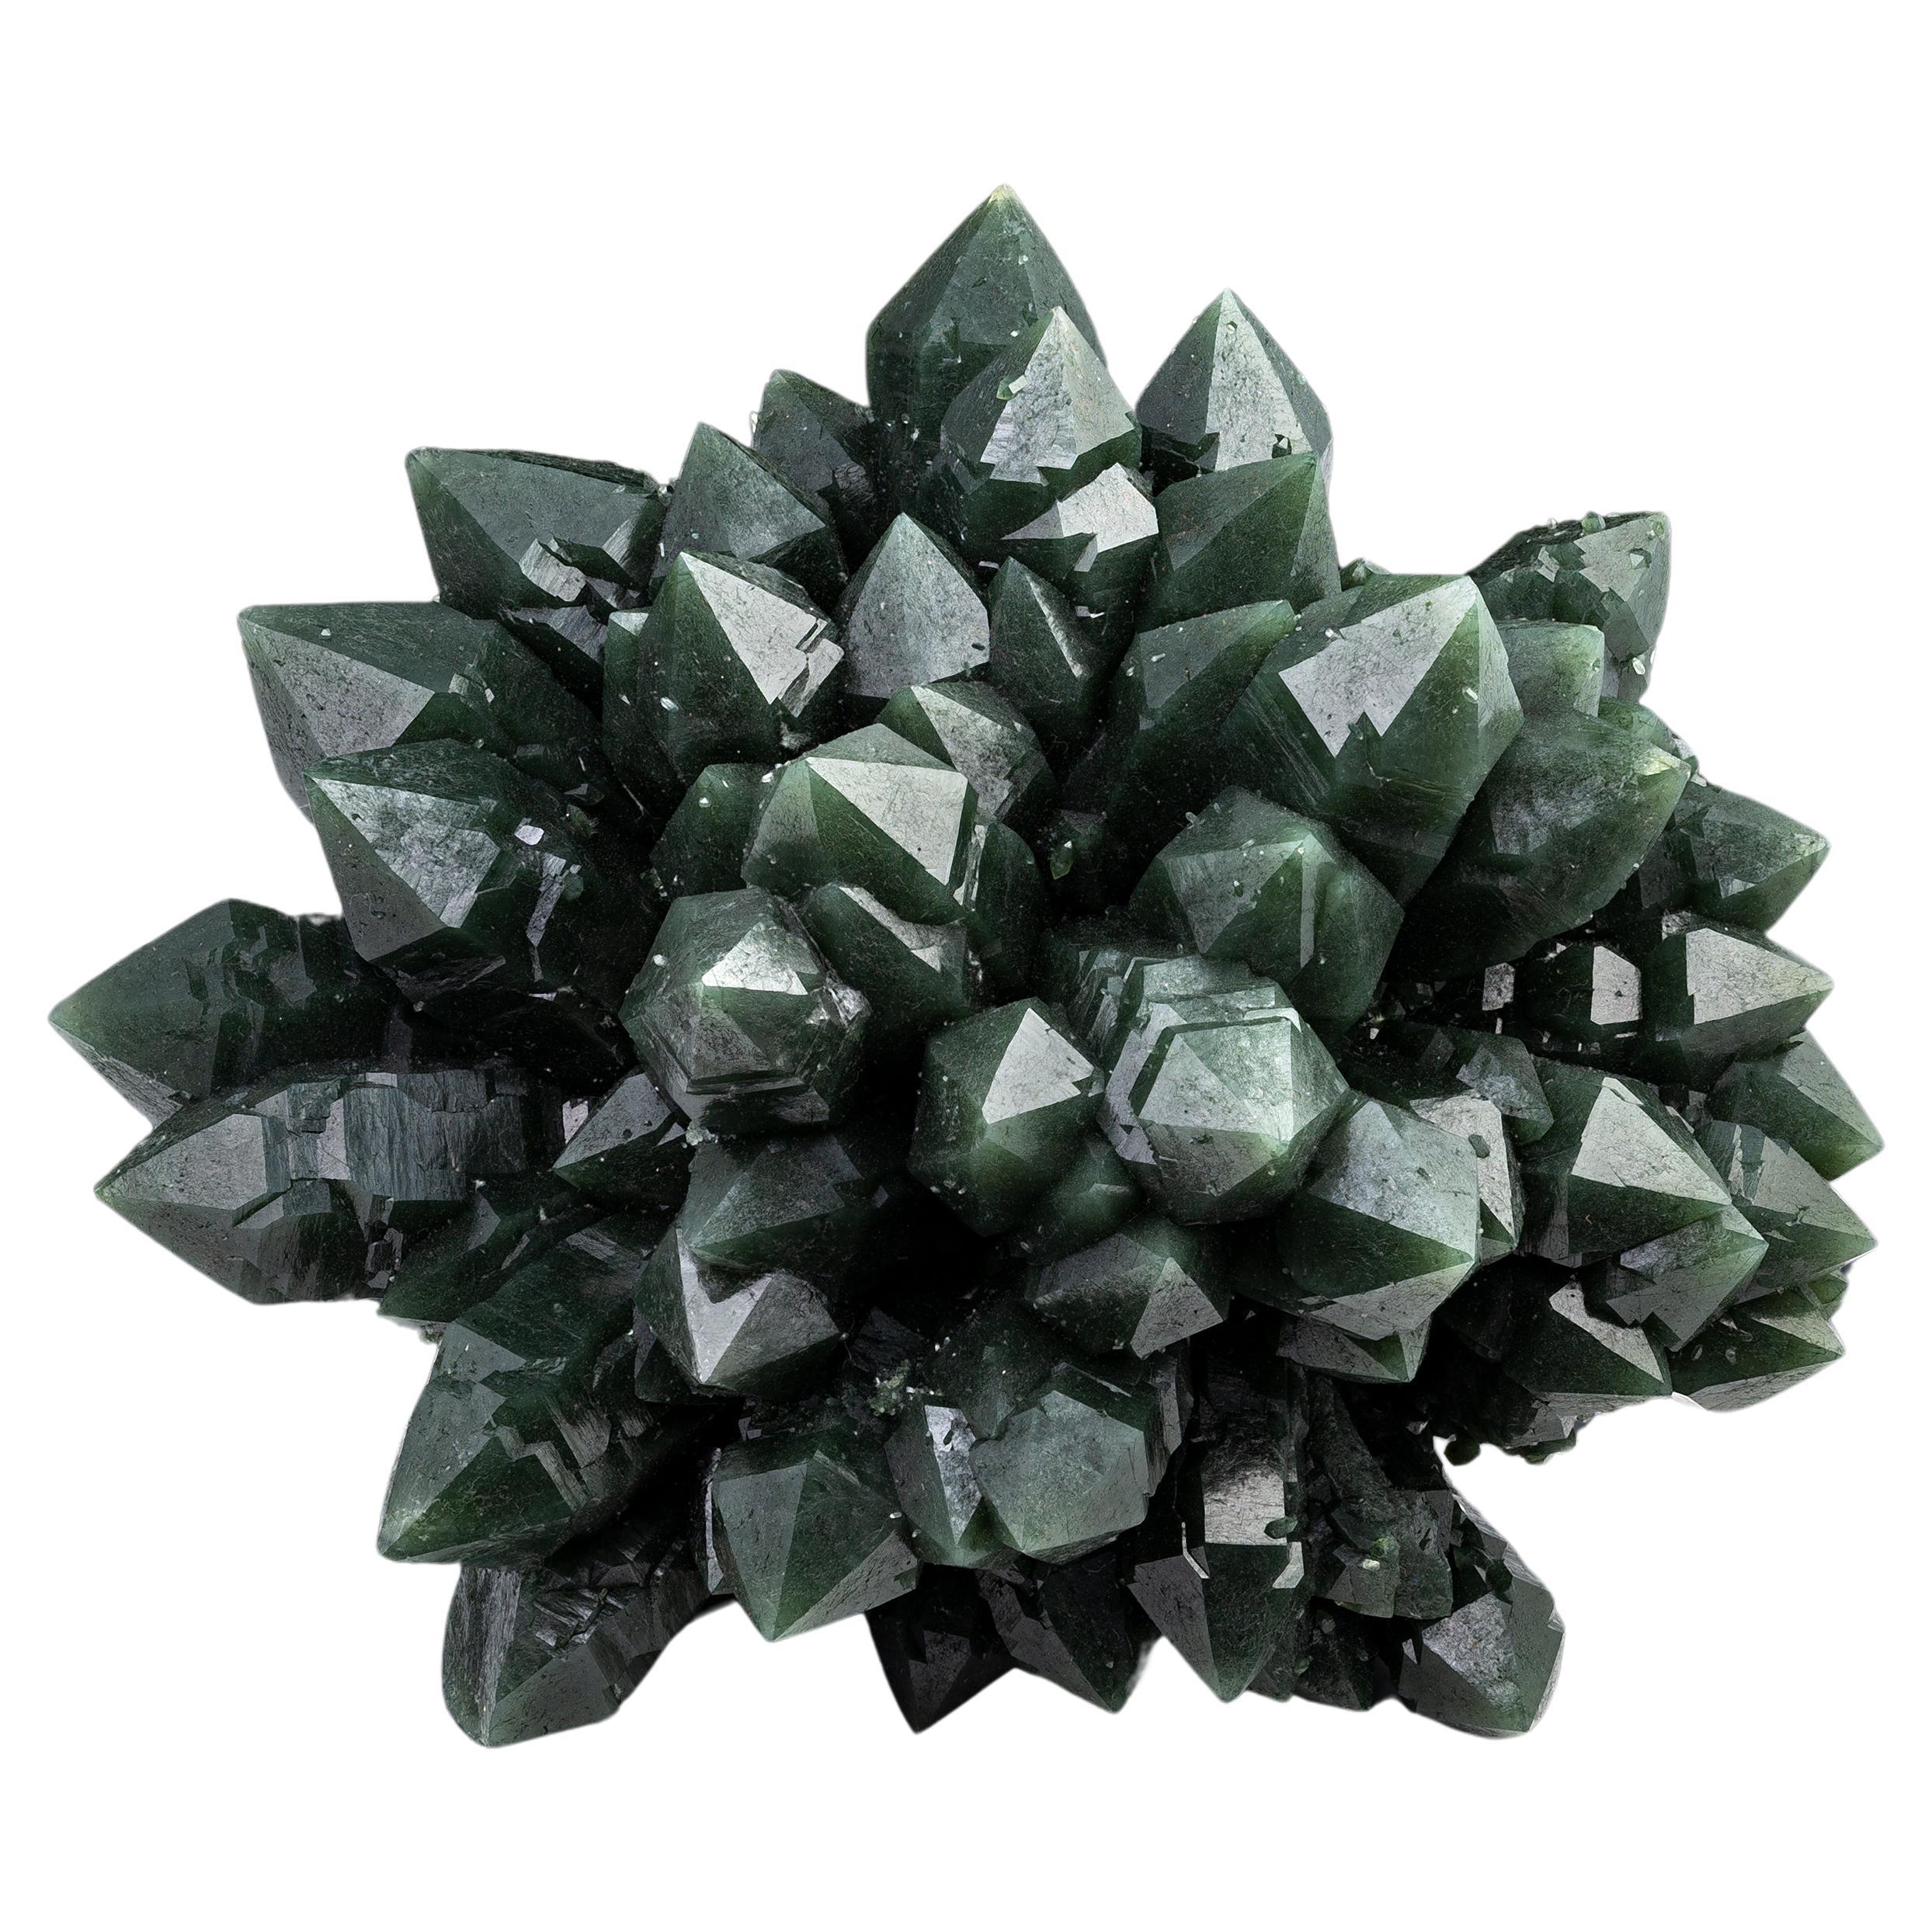 Green Quartz var. Prasiolite Crystal Cluster Mineral Specimen – China For Sale